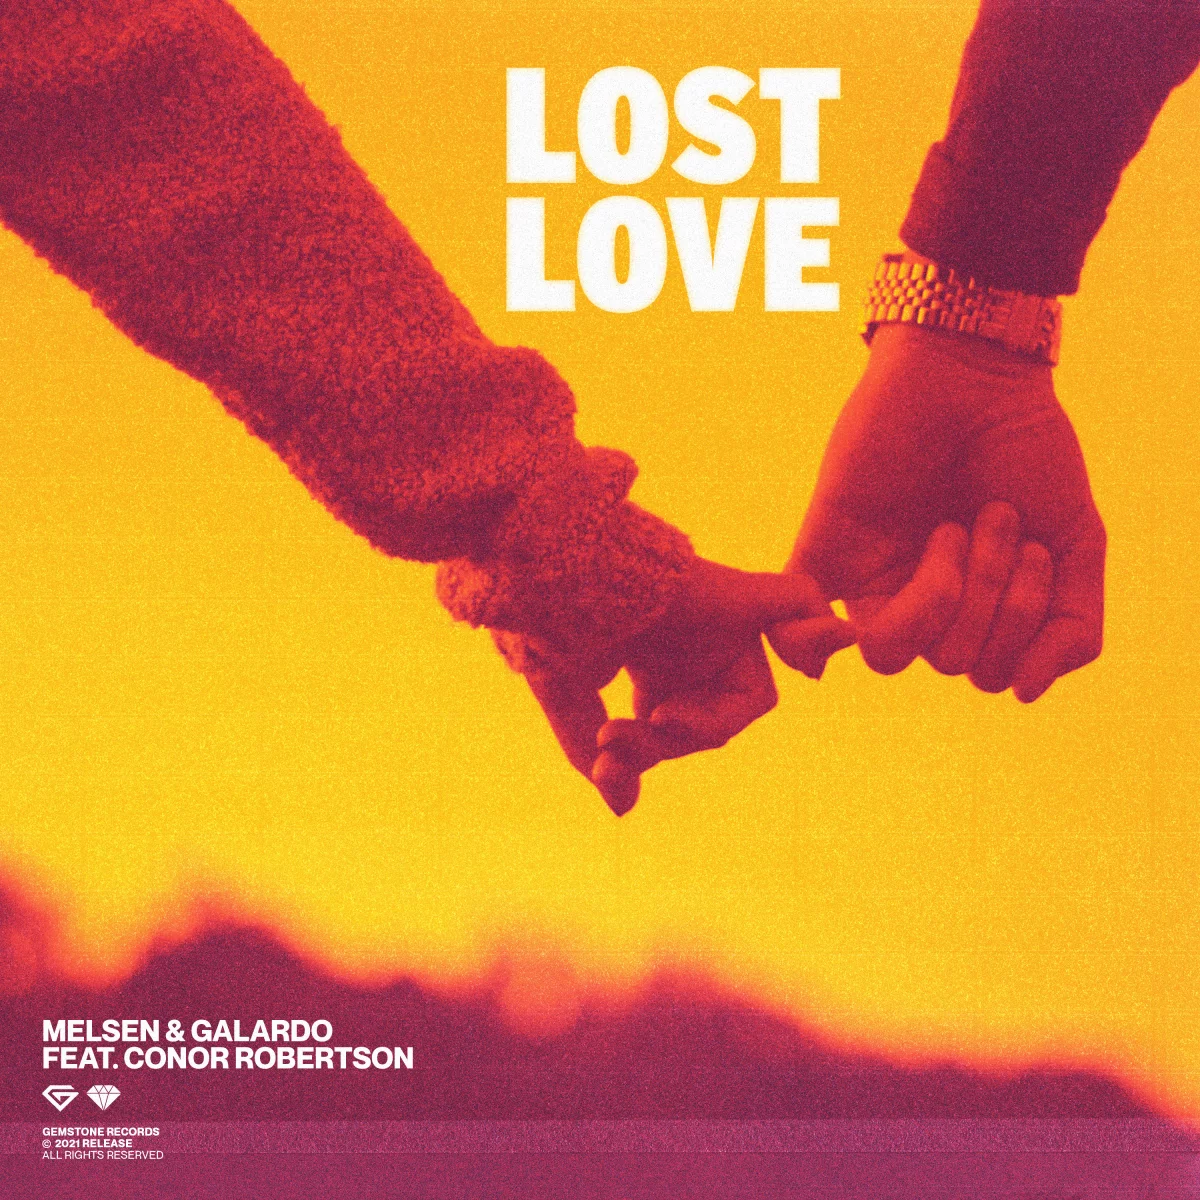 Lost Love - Melsen⁠ & Galardo⁠ feat. Conor Robertson⁠